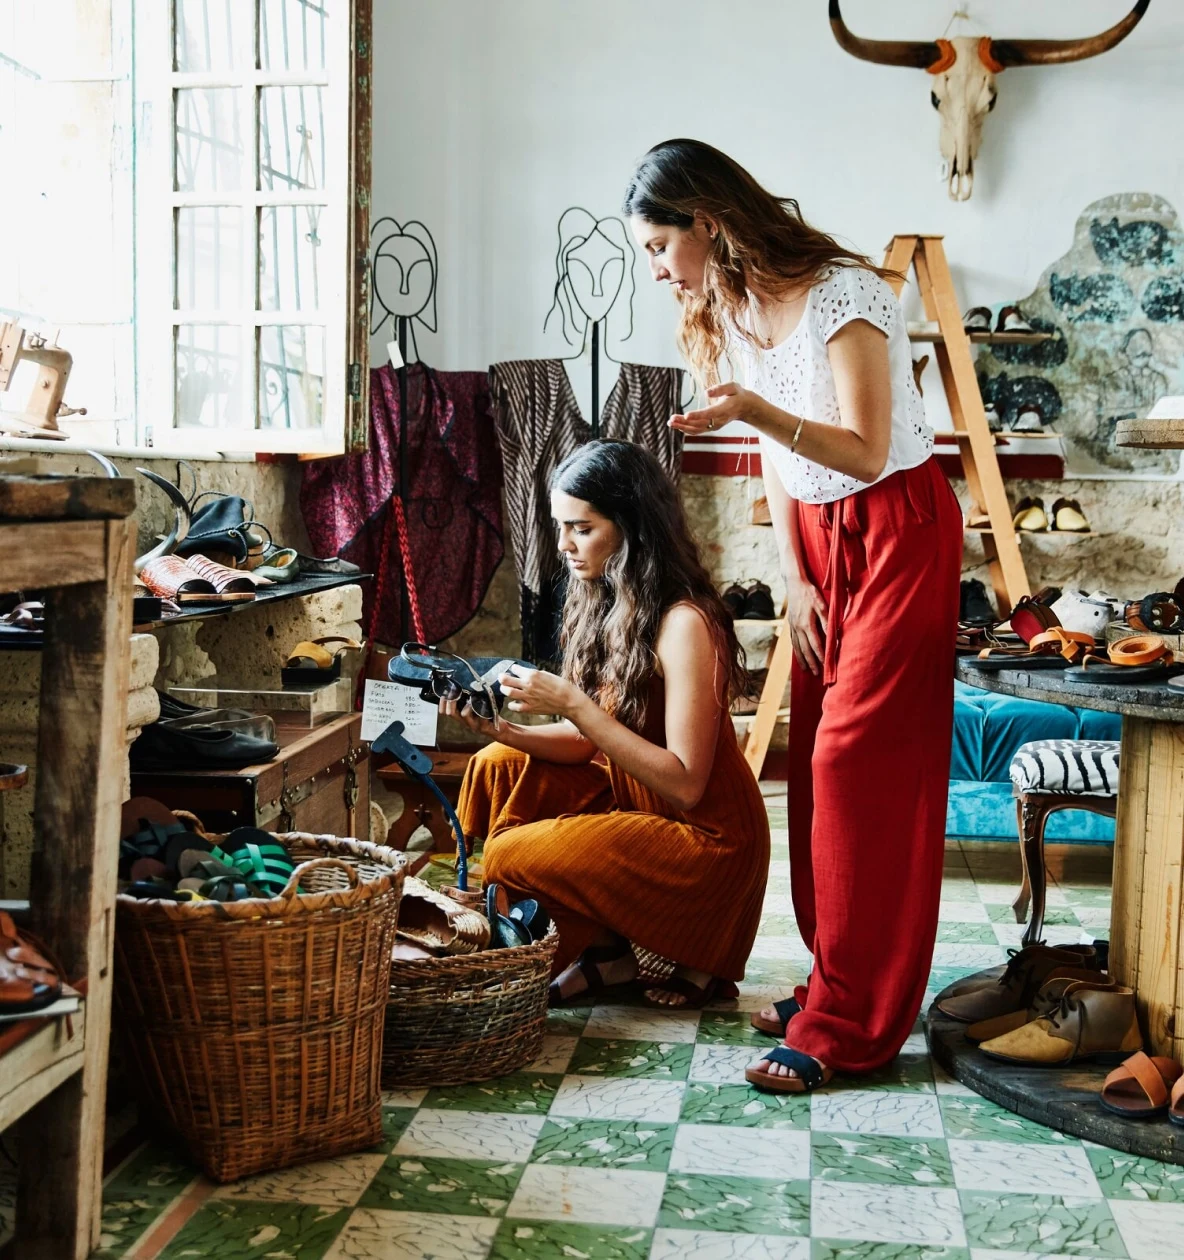 Twee vrouwen met lang donker haar bekijken een paar sandalen in een kledingwinkel